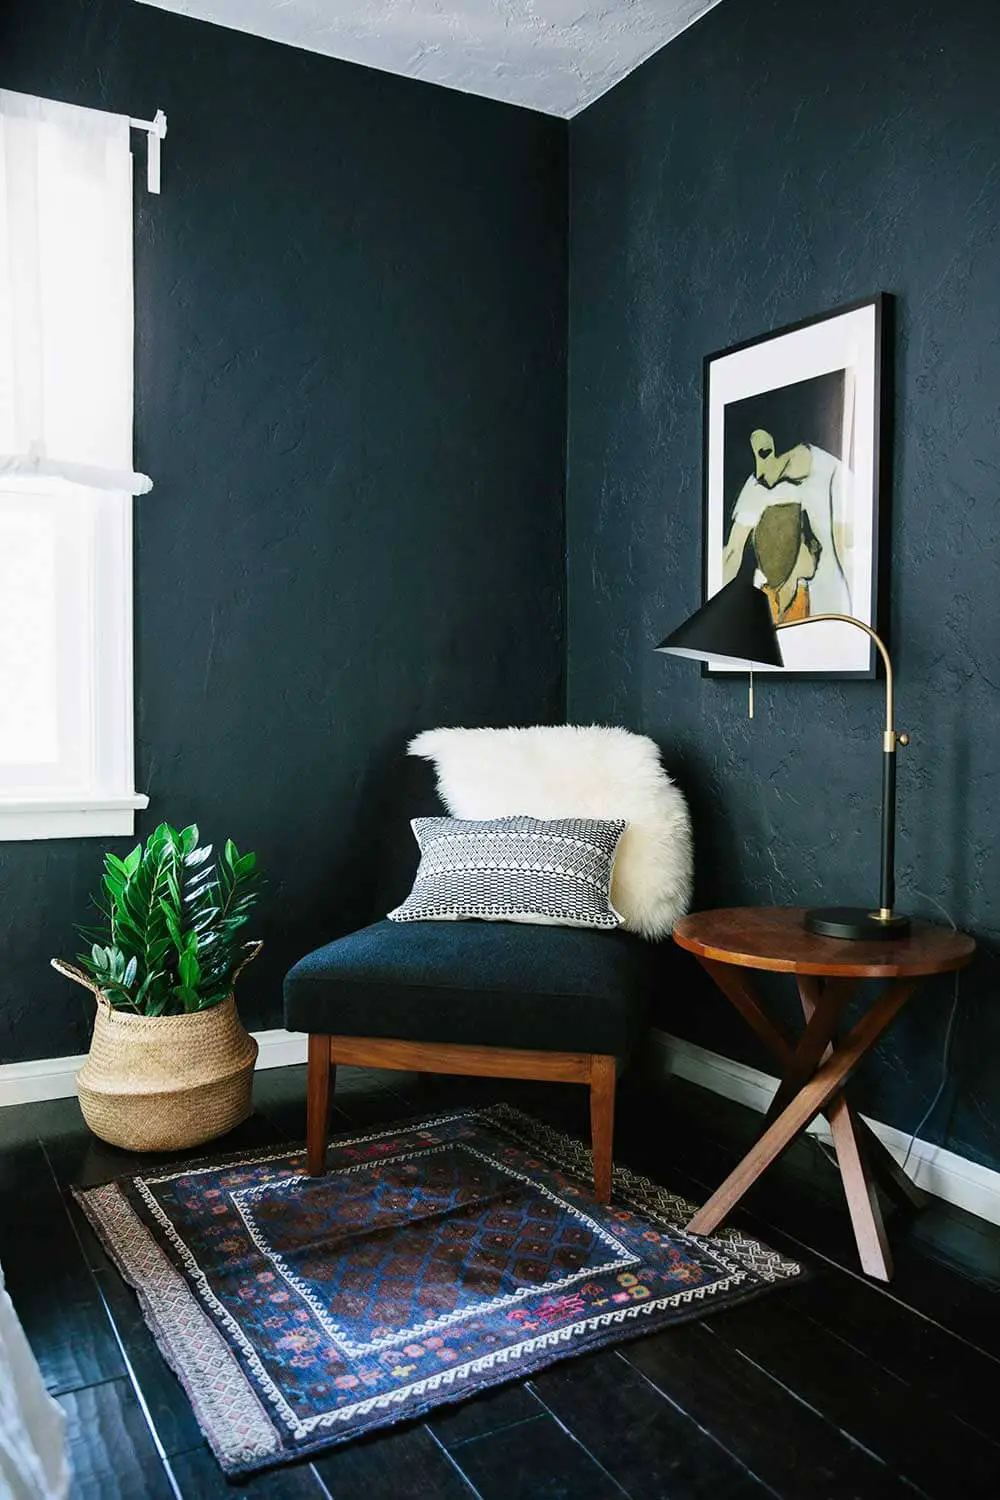 Chaise de style scandinave avec revêtement bleu pétrole dans salon chic